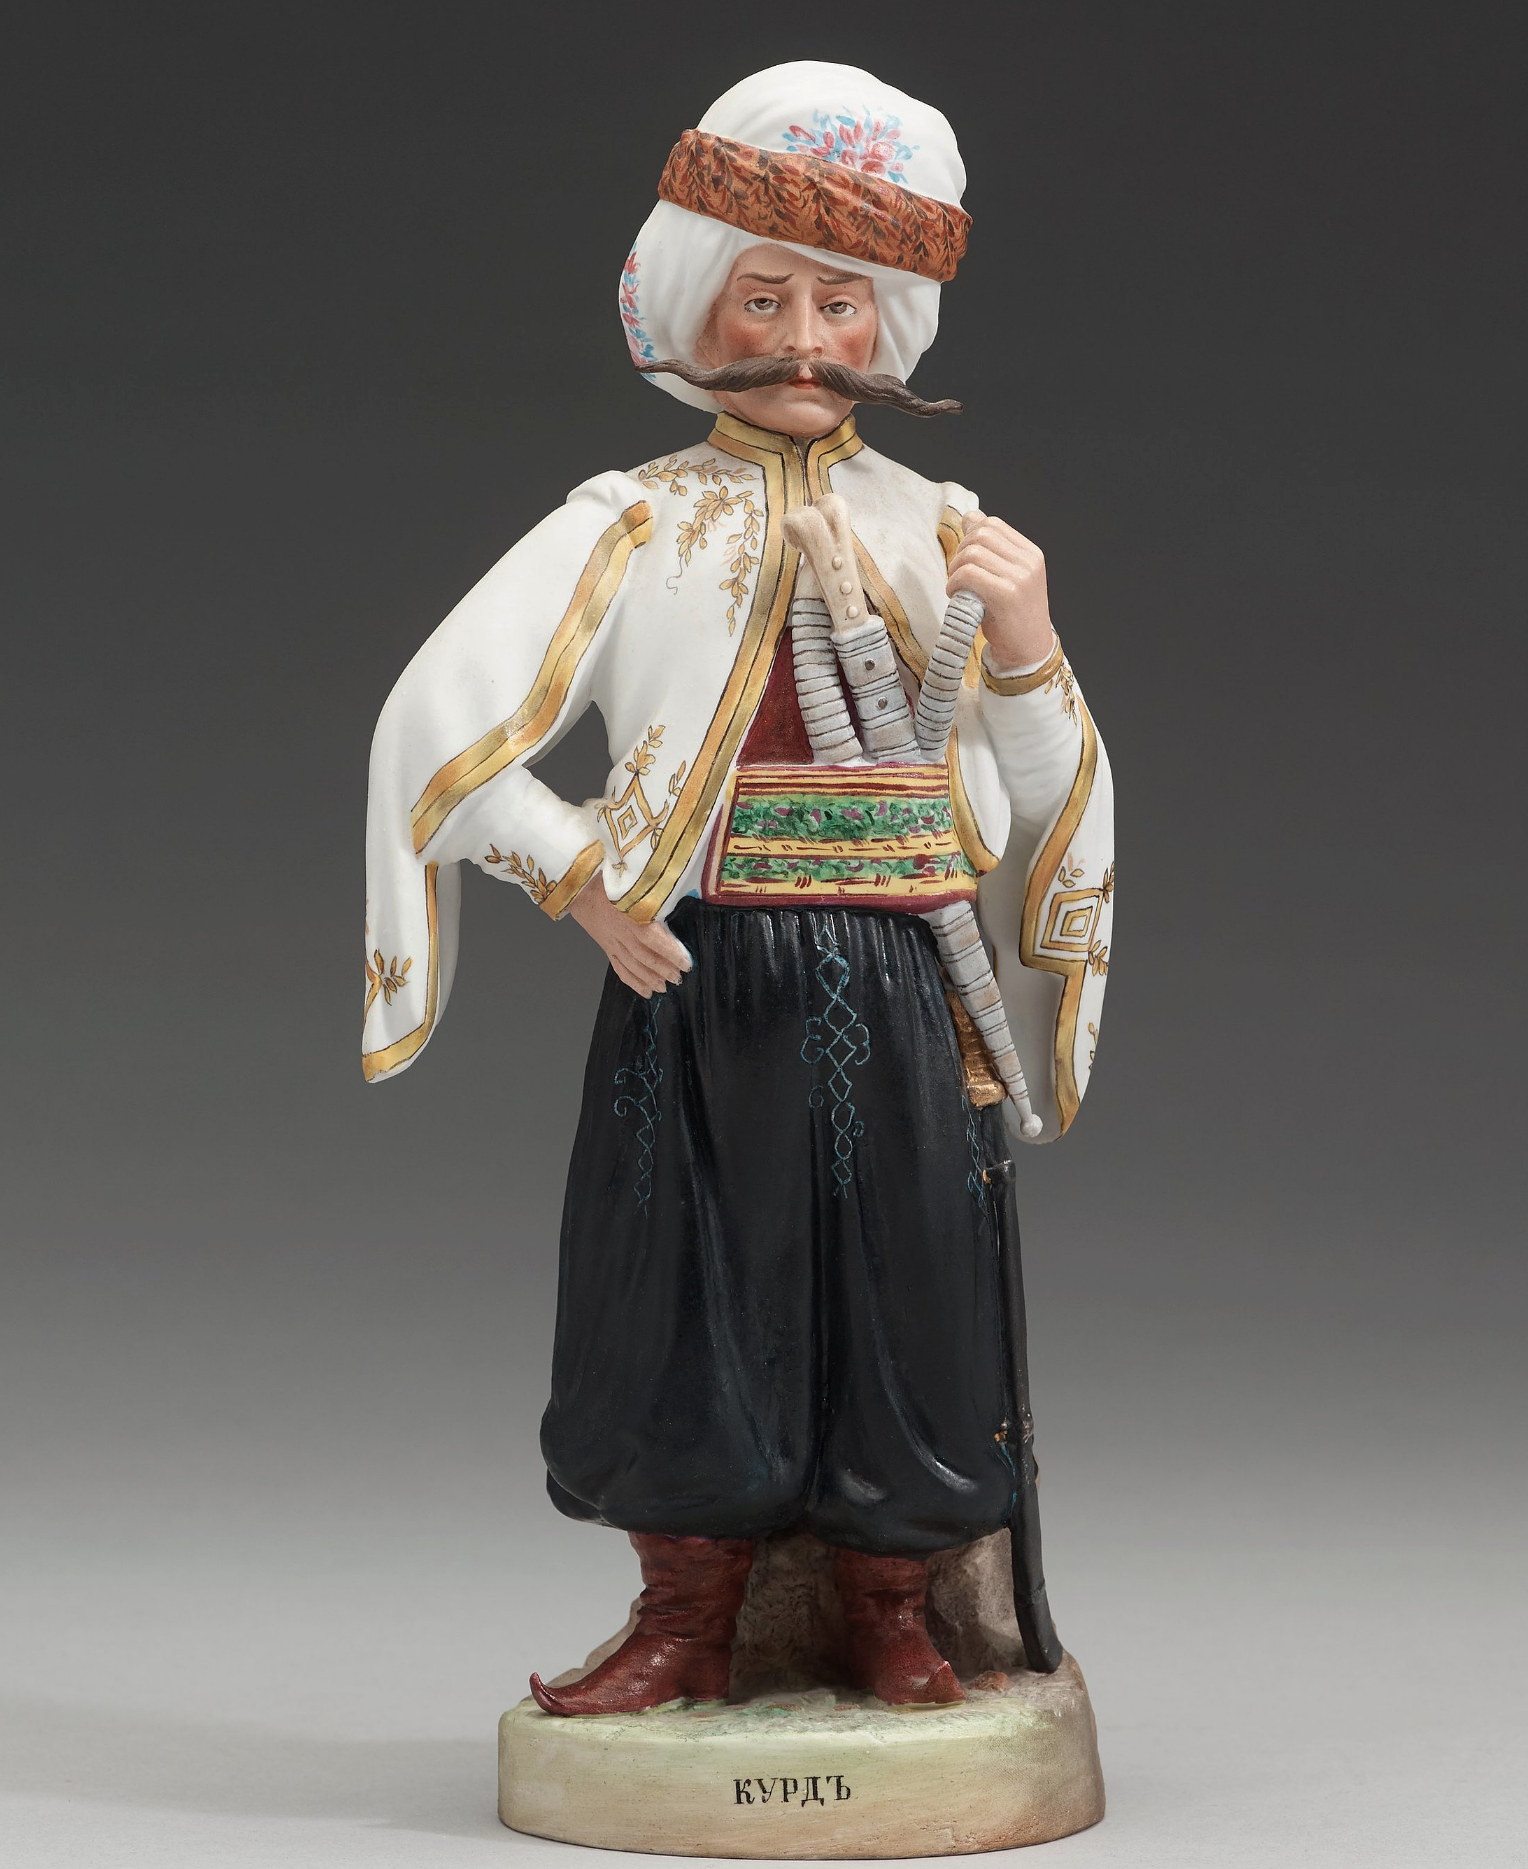 Gardner porcelain figure Kurd from "Peoples of Russia" series